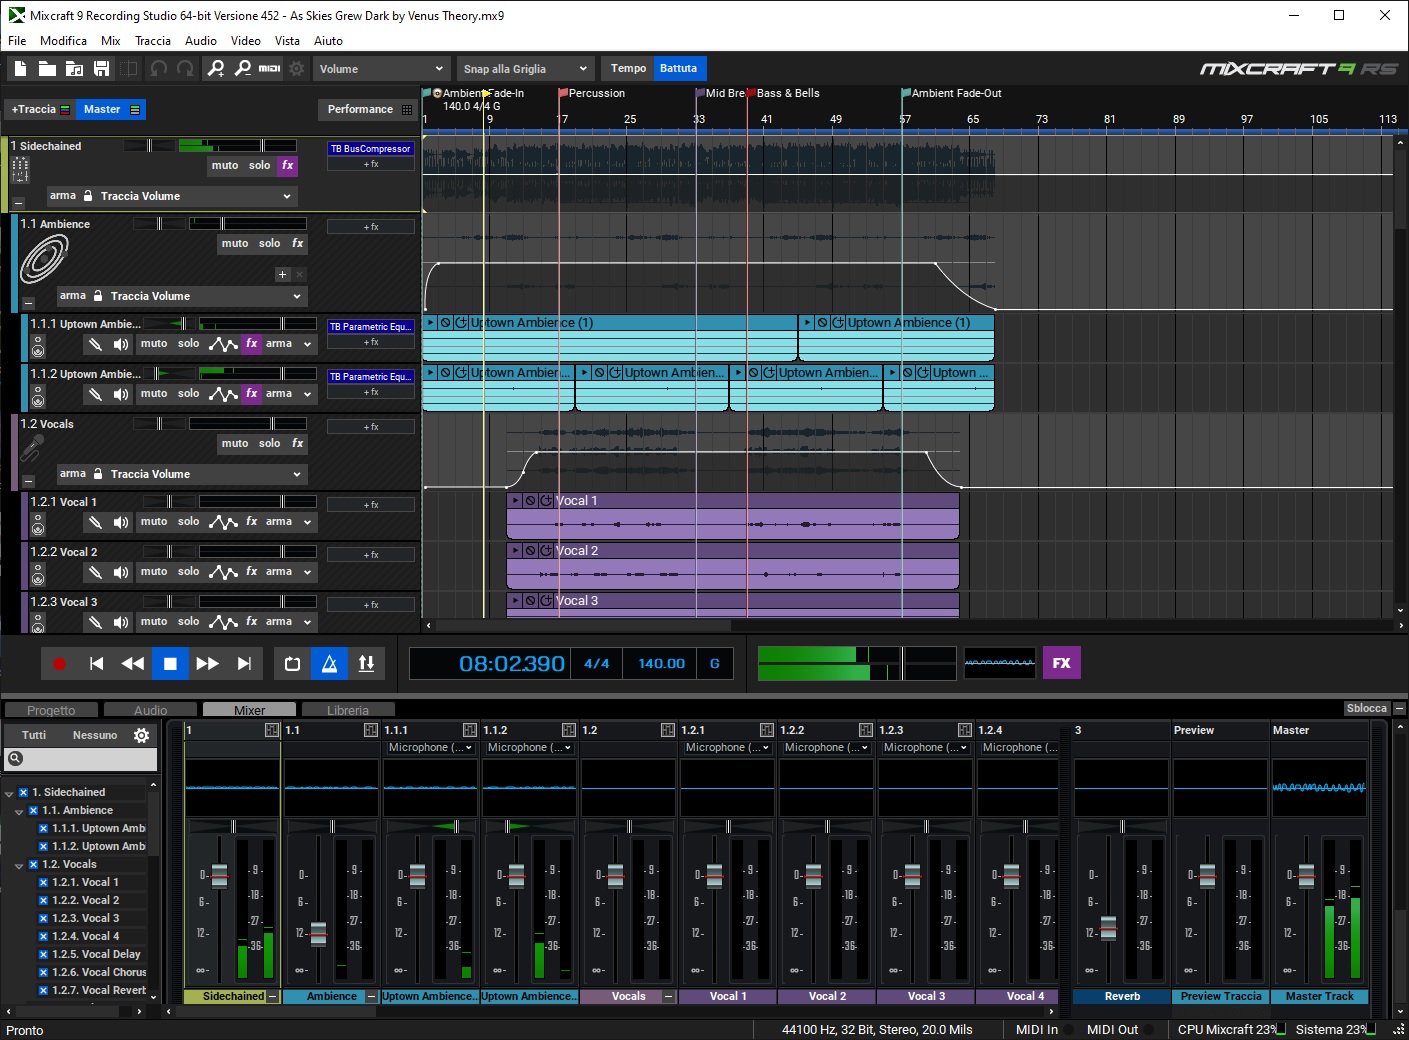 Acoustica Mixcraft 10.1 Recording Studio Build 587 (x64) Multilingual NVT